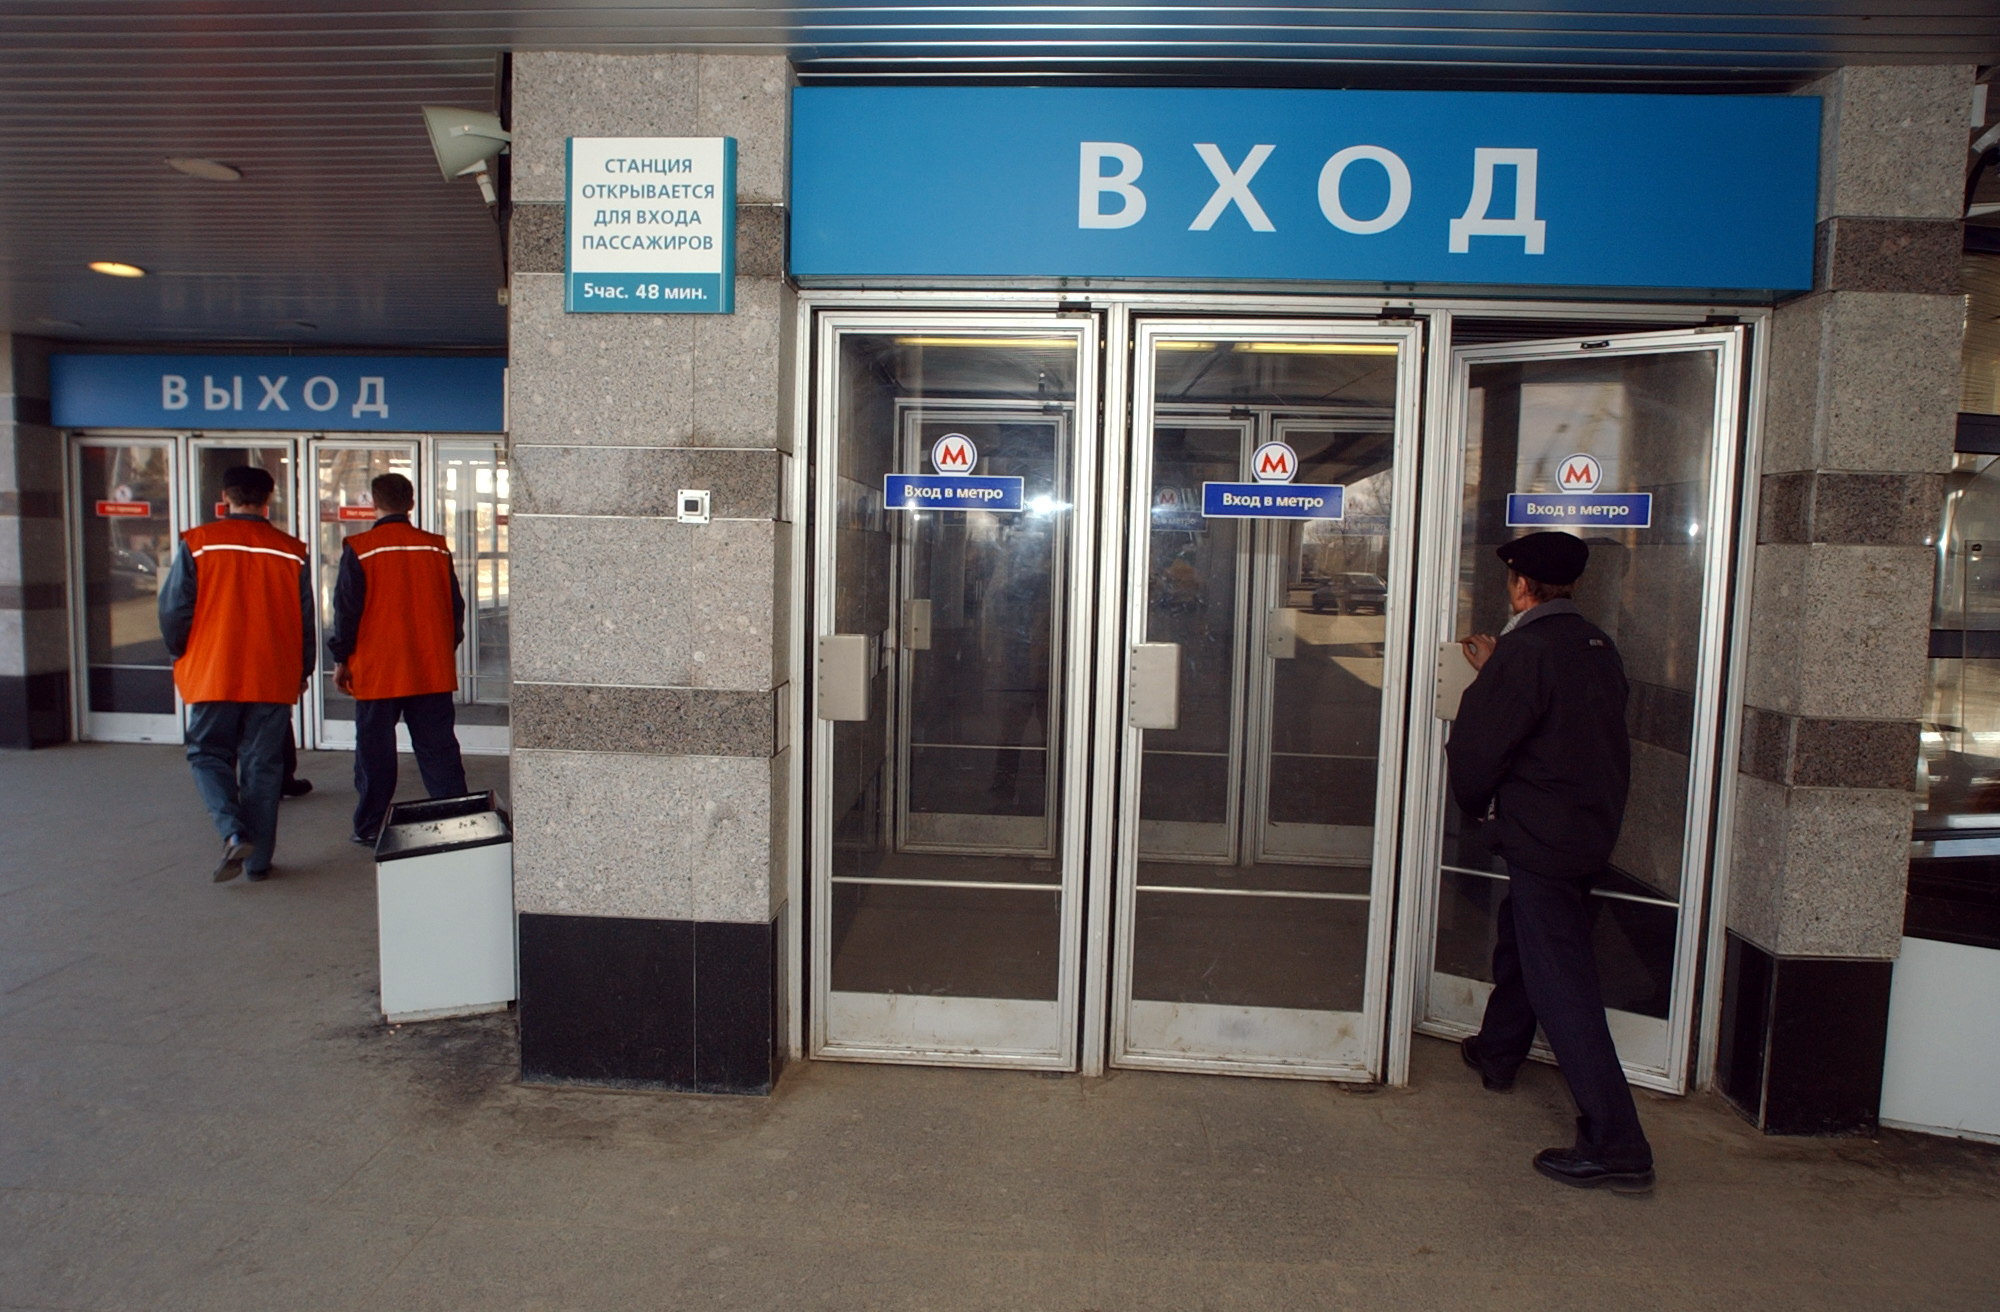 Метрополитен вход. Двери метро. Метро дверь Москва. Вход в метро. Двери в вестибюле метро.